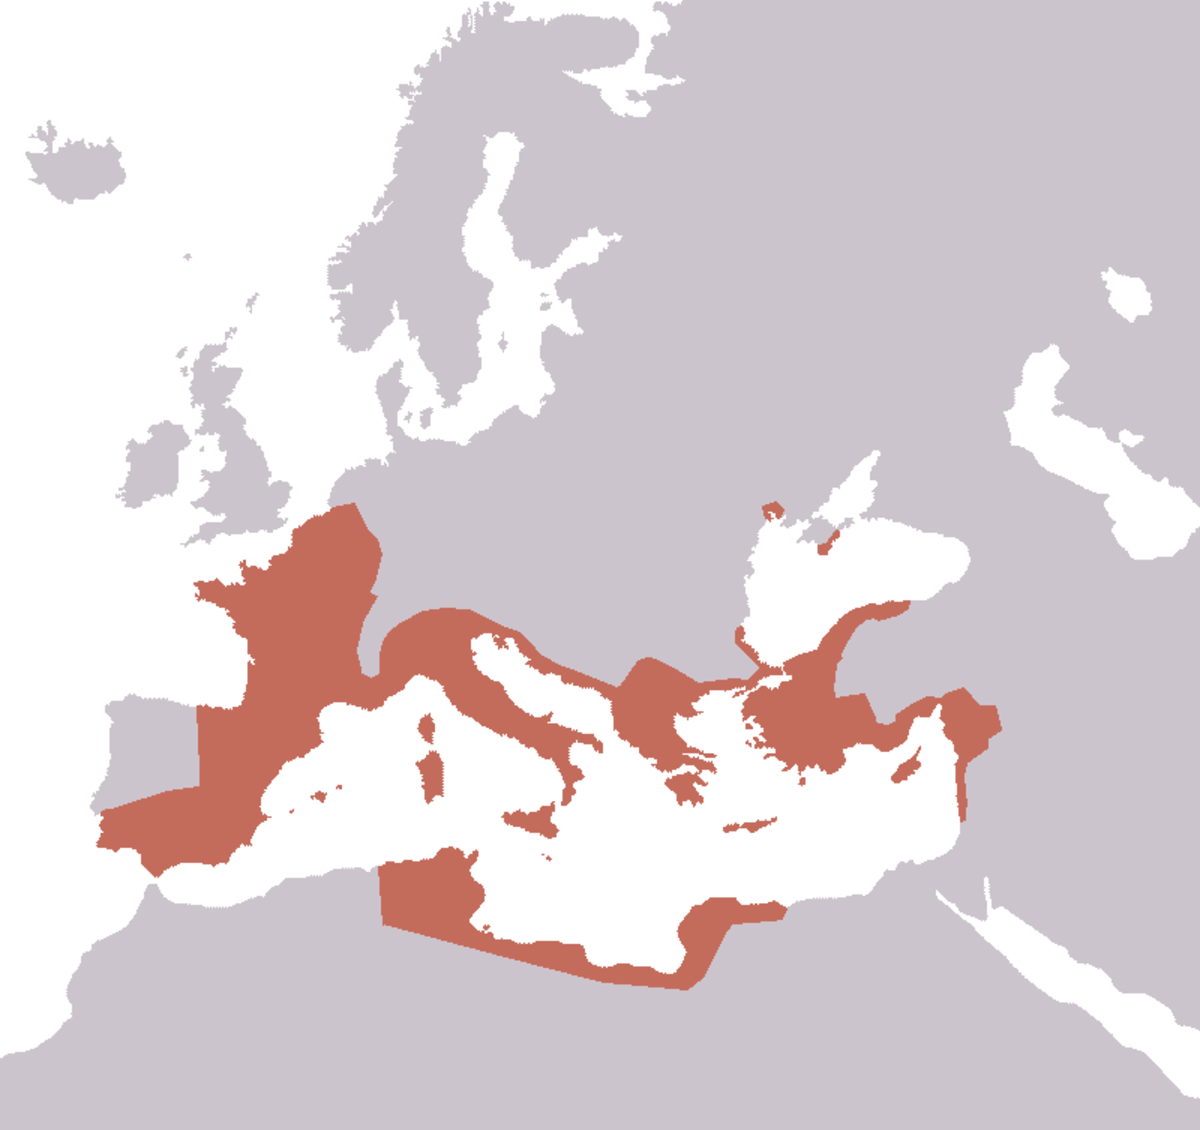 The Roman Republic before the invasion of Crassus